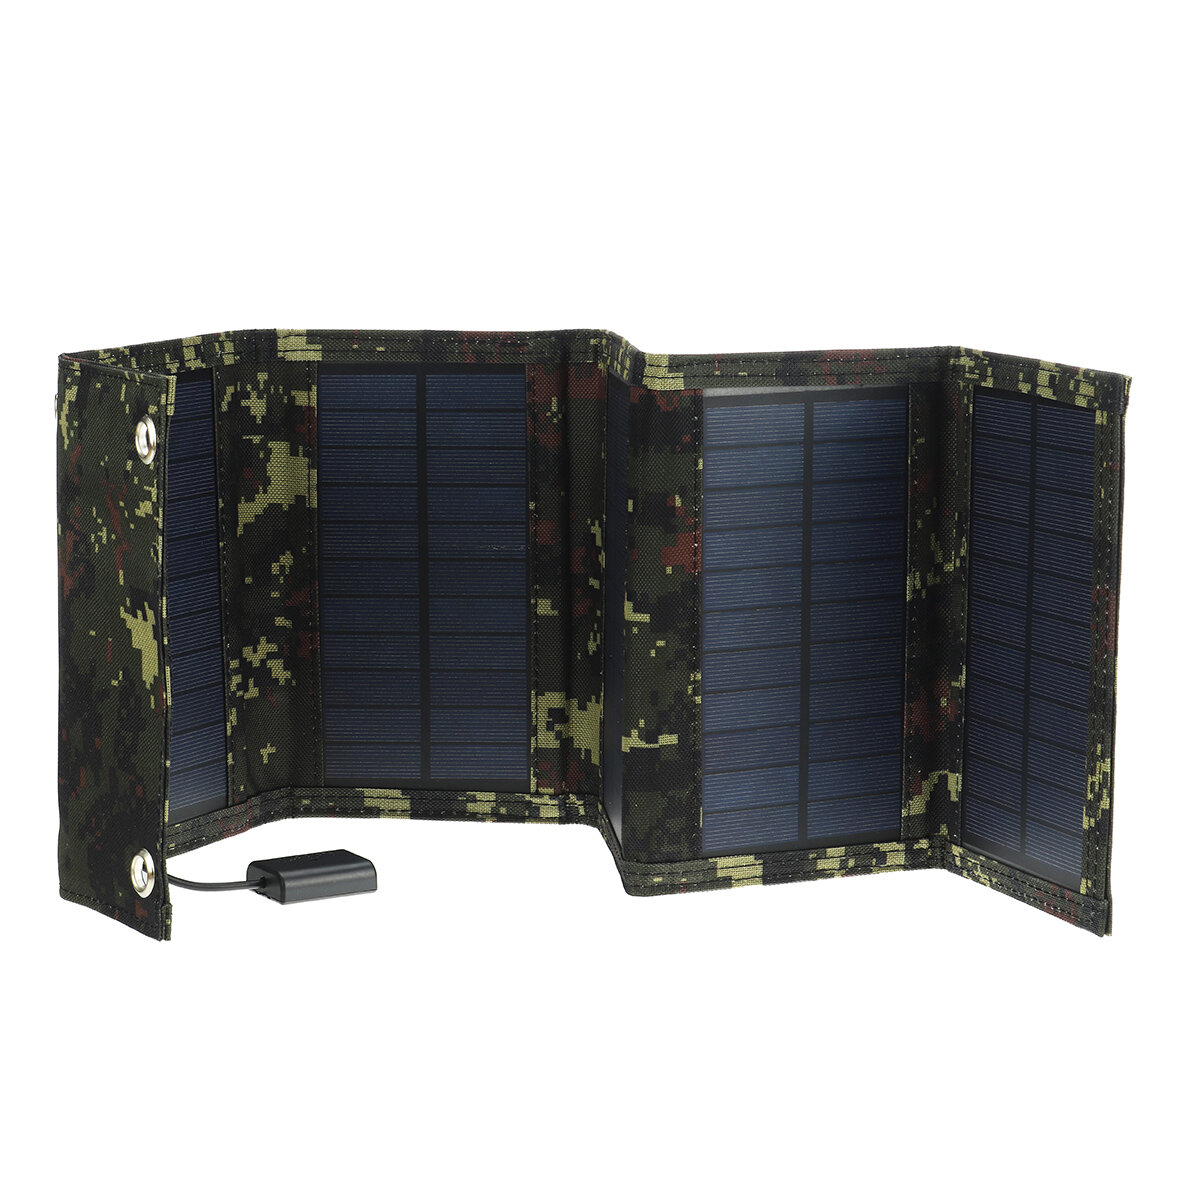 10 in 1 opvouwbaar zonnepaneel Power Bank Opvouwbare USB-batterijlader Outdoor wandelen Camping